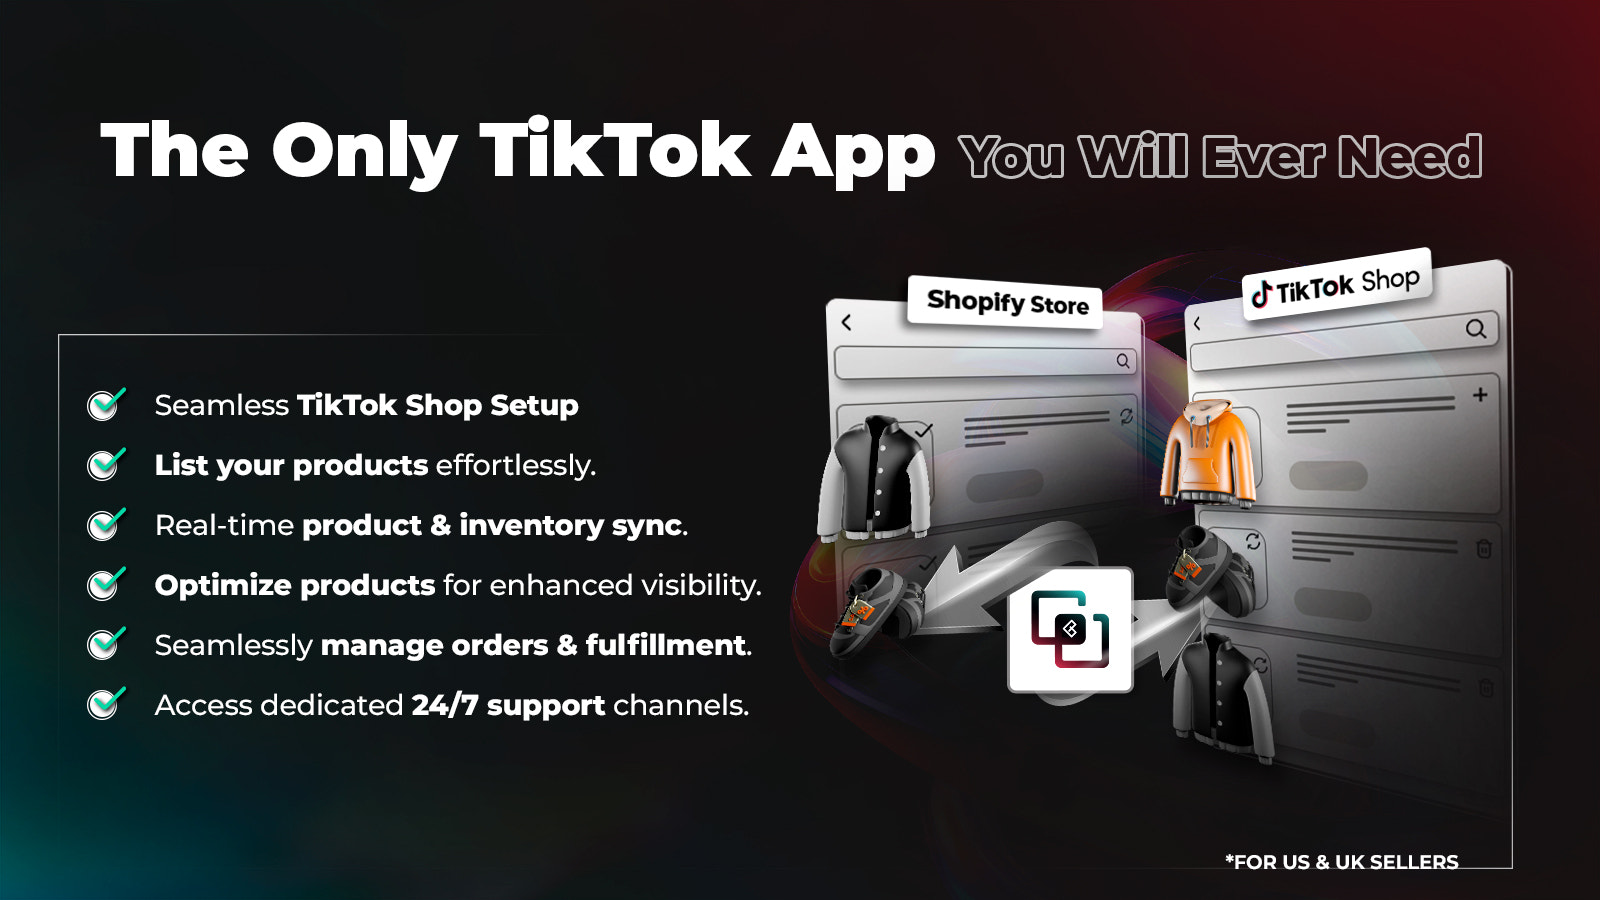 Vereenvoudiging van TikTok Shop verkoop met moeiteloze integratie